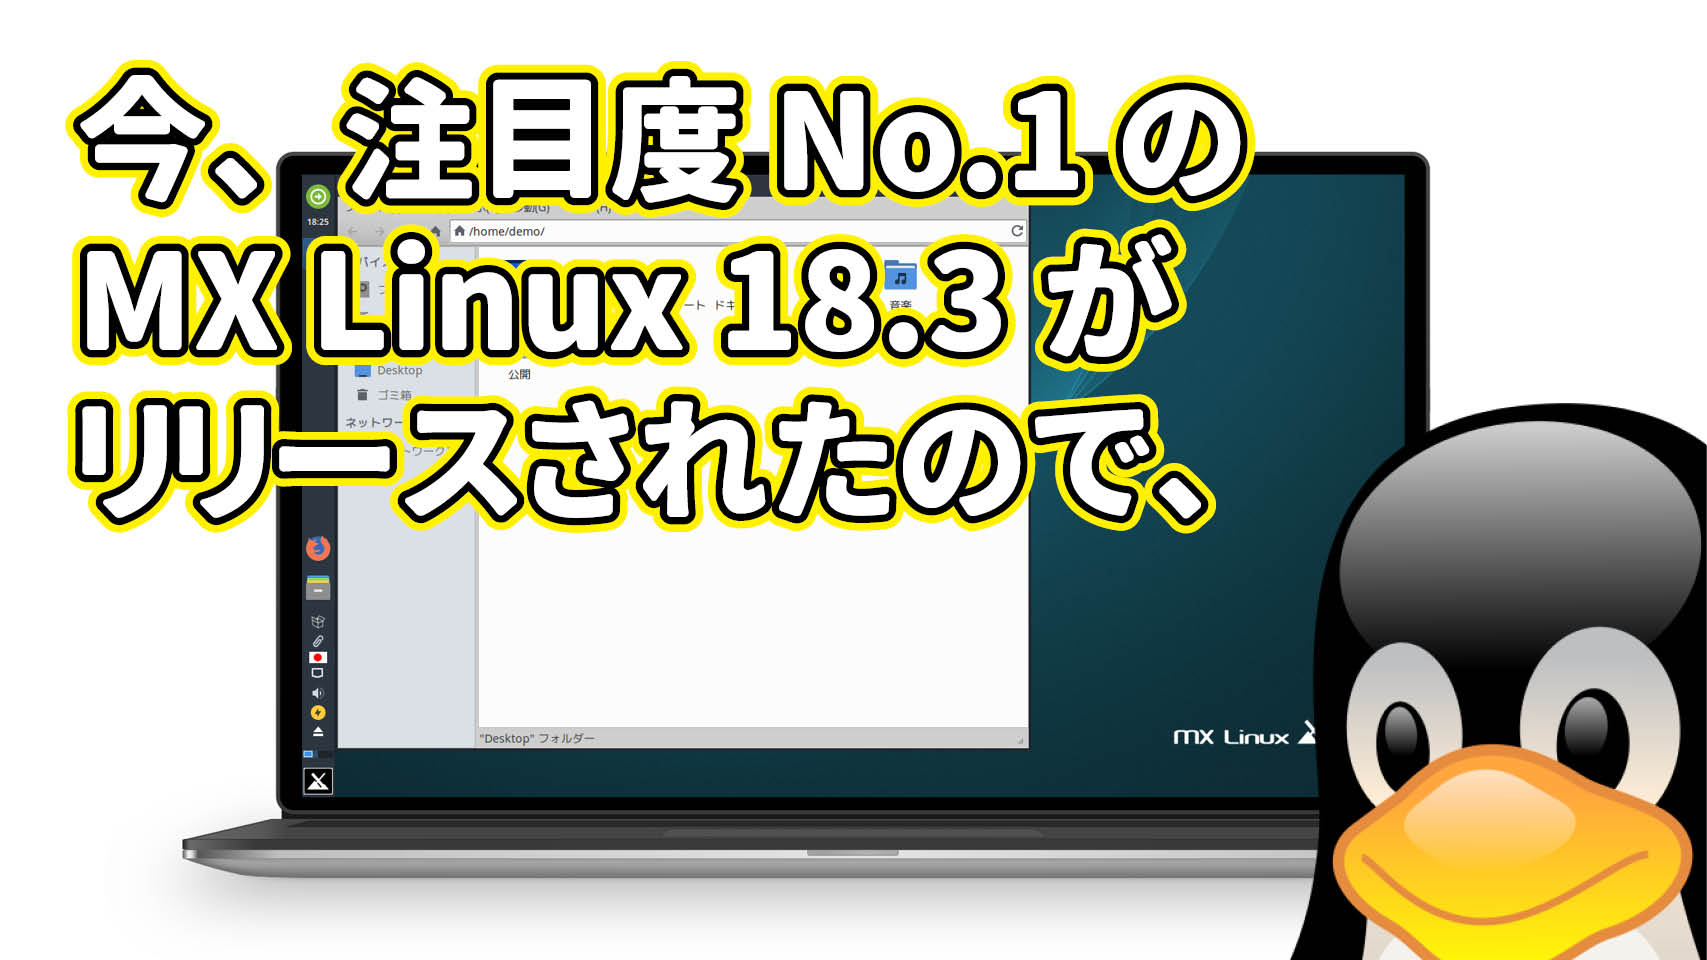 今、注目度 No.1 の MX Linux 18.3 がリリースされたので、